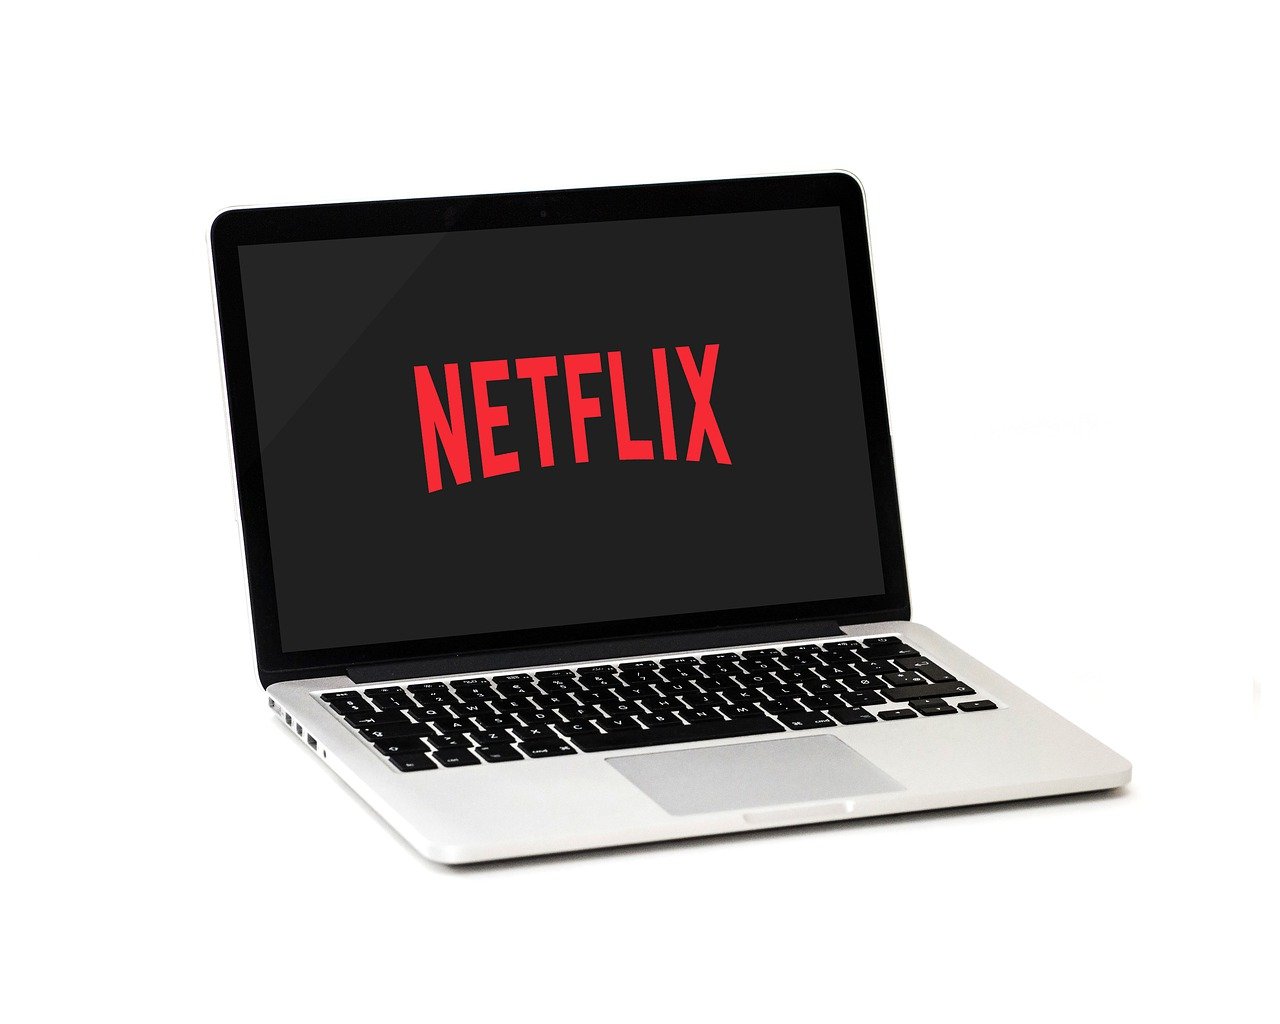 Condivisione account di Netflix: utenti bloccati, cosa sta accadendo?